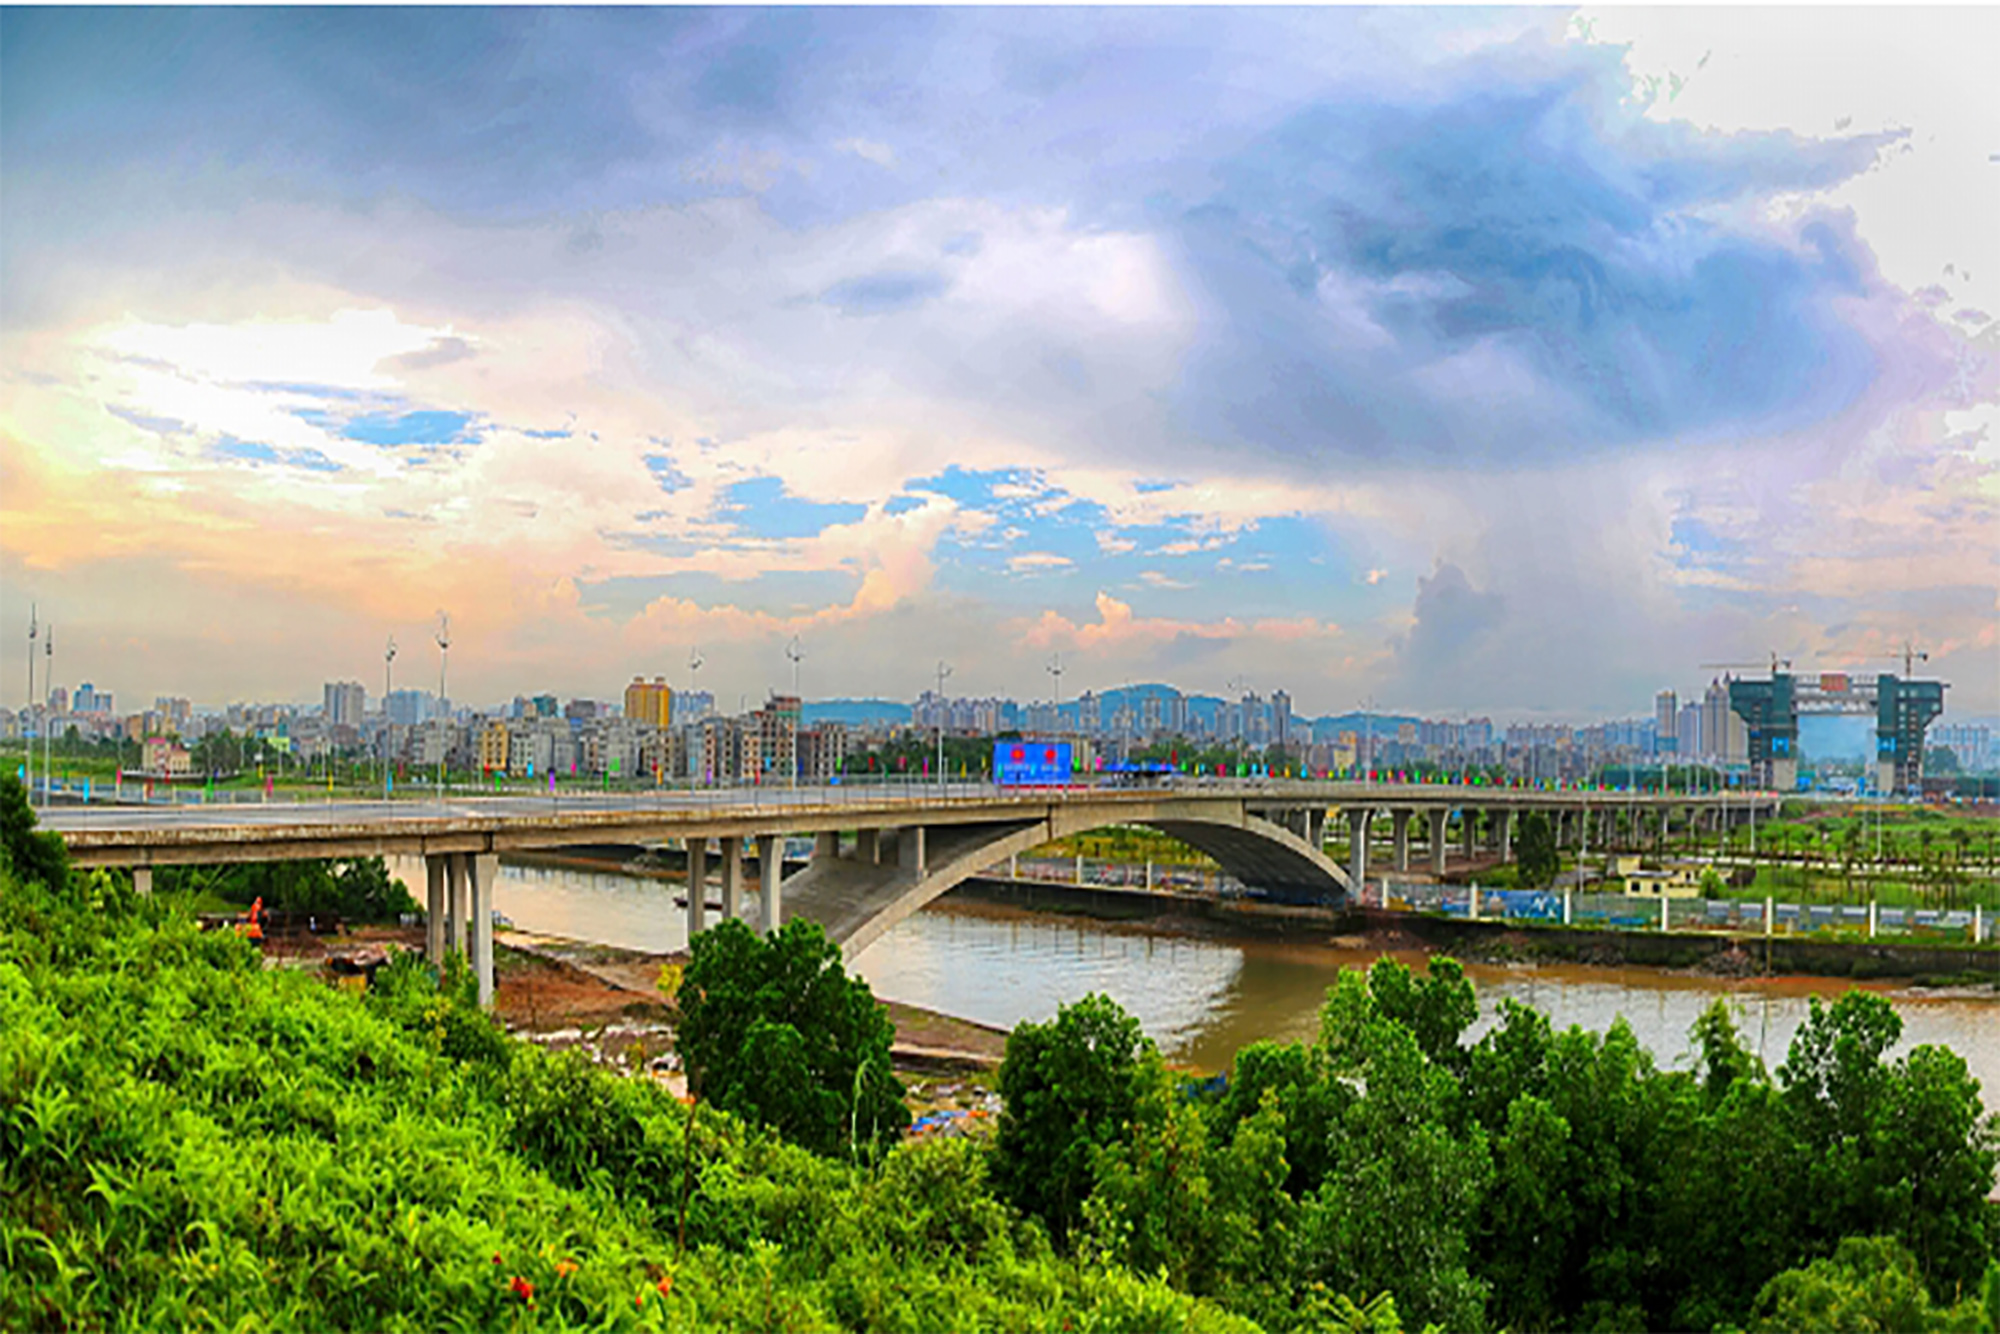 Cầu Bắc Luân II (TP Móng Cái) góp phần tạo điều kiện thúc đẩy hợp tác, giao thương kinh tế, du lịch Việt Nam - Trung Quốc; là công trình cửa ngõ trong chuỗi các dự án giao thông kết nối Việt Nam, ASIAN với Trung Quốc.